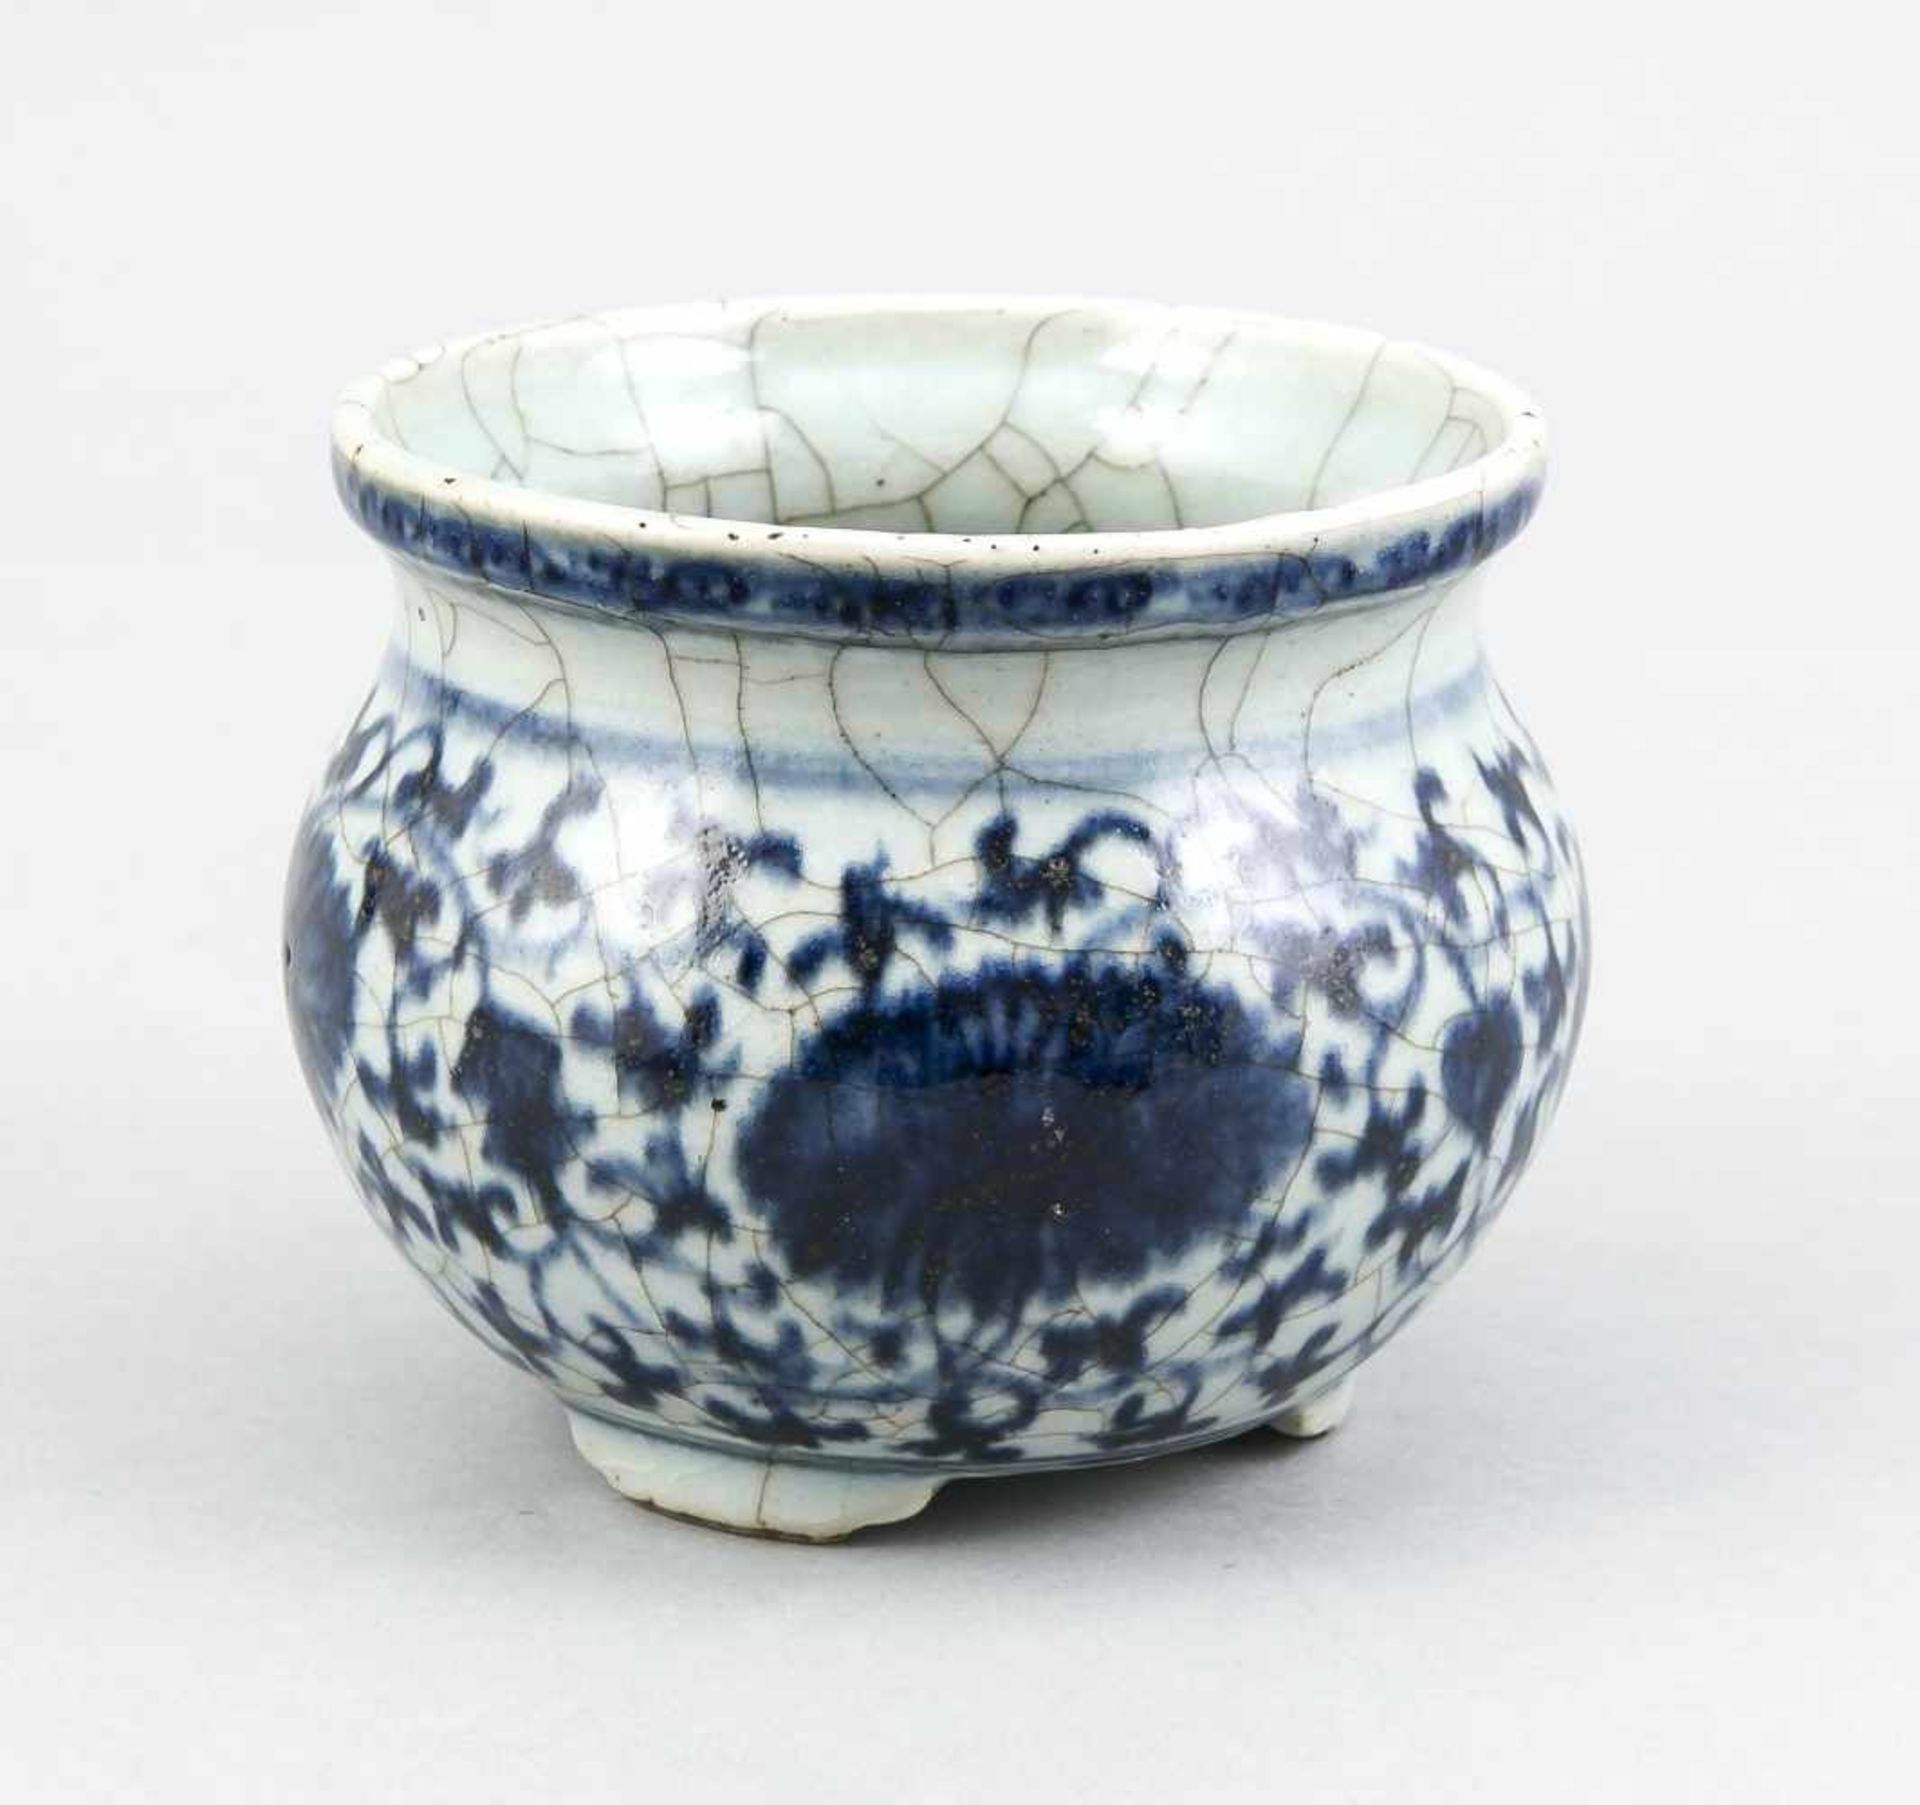 Kleines Blau-Weiß Räuchergefäß, China, Qing Dyn. (1644-1911), Porzellan mit unterglasurblauer